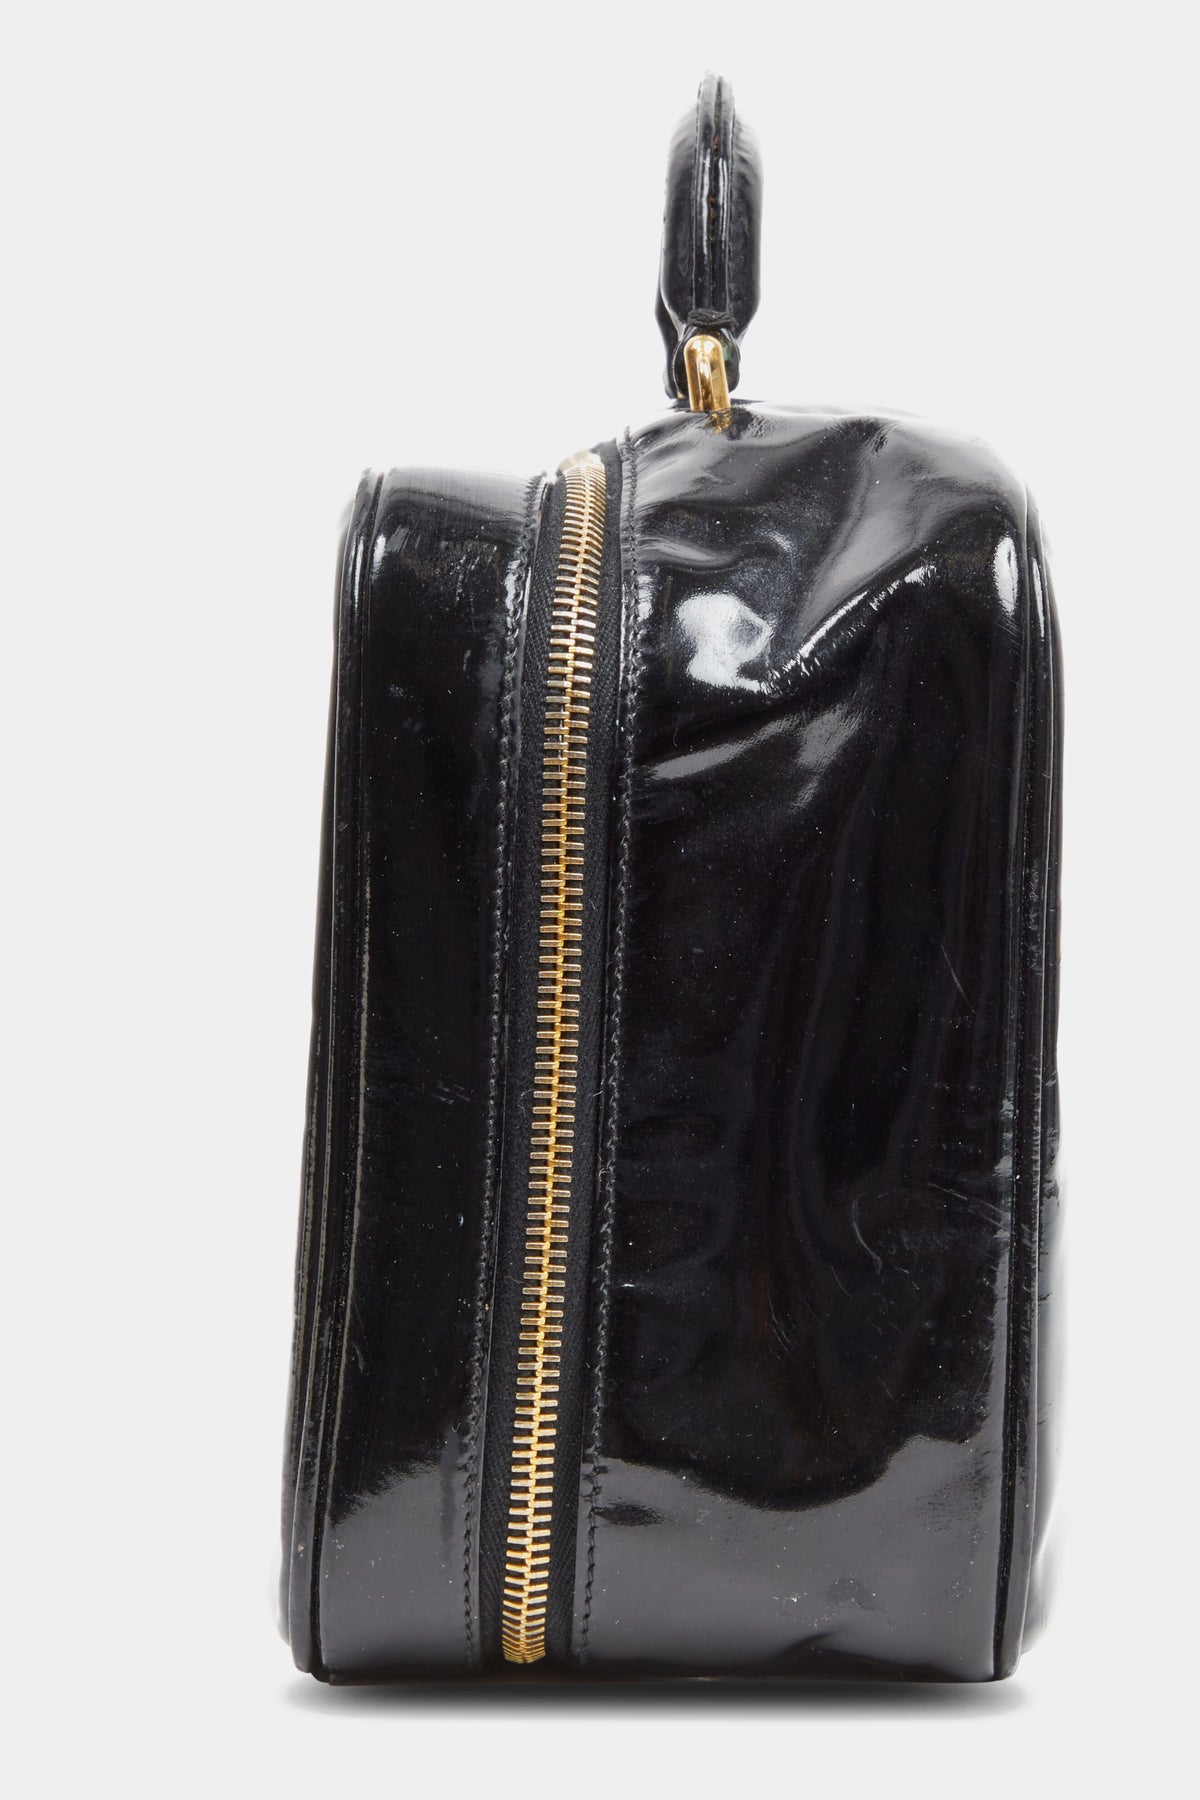 Coles Leather Micro Wallet - Black - Ben Sherman